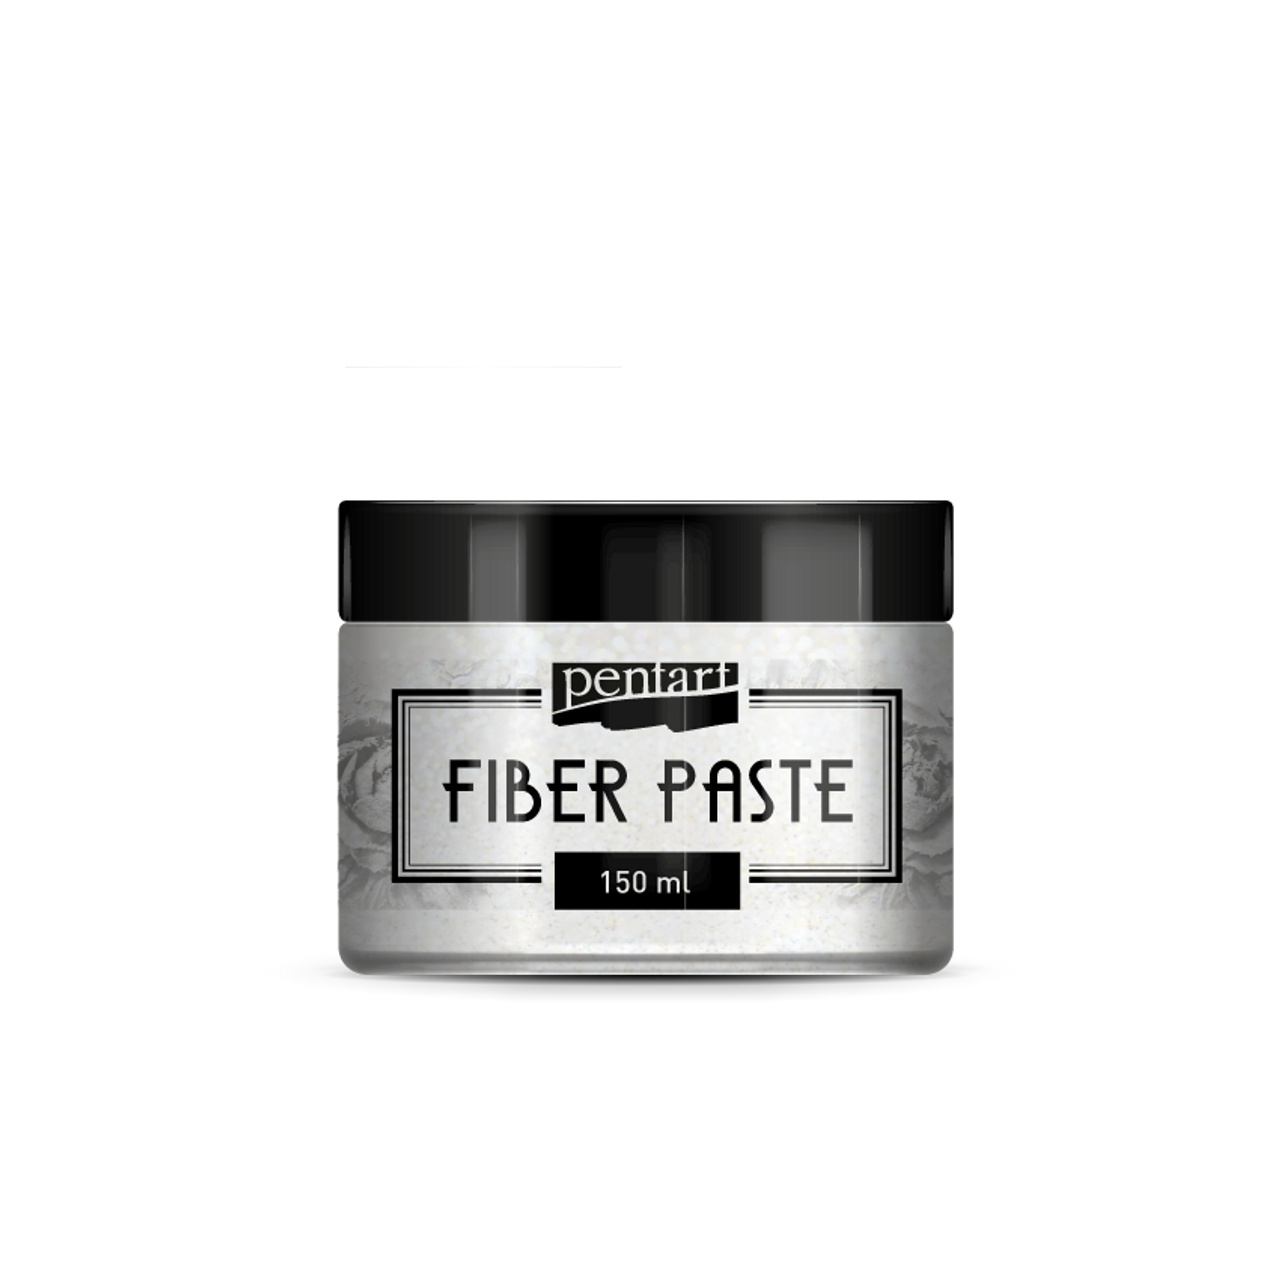 Pentart Fiber paste 150 ml